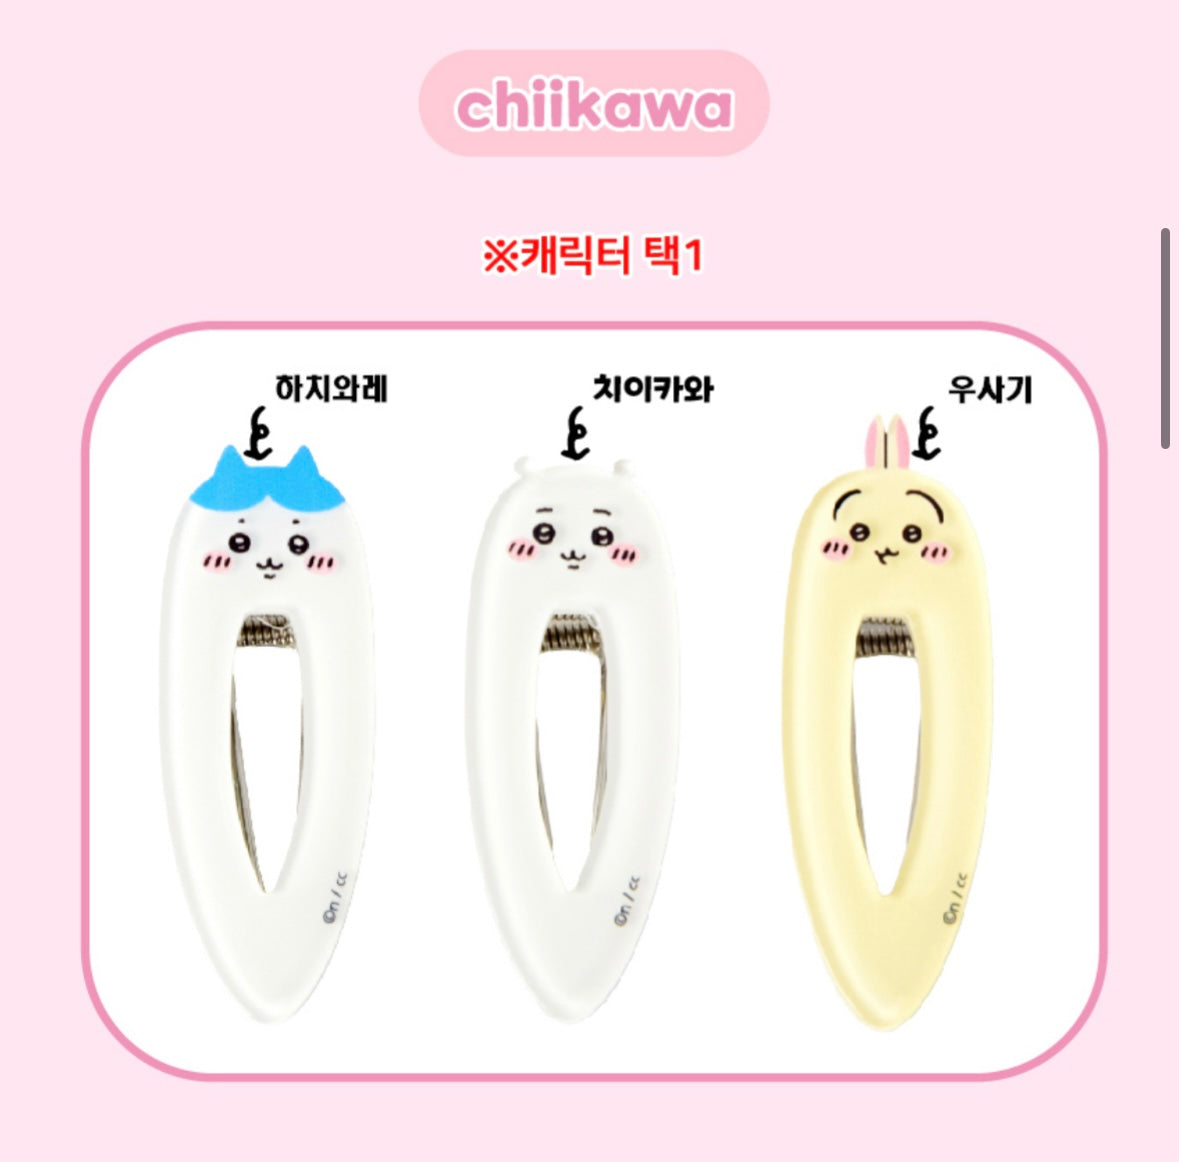 [Chiikawa] Chiikawa Long Hair Pin / Hair Clip 3 Styles